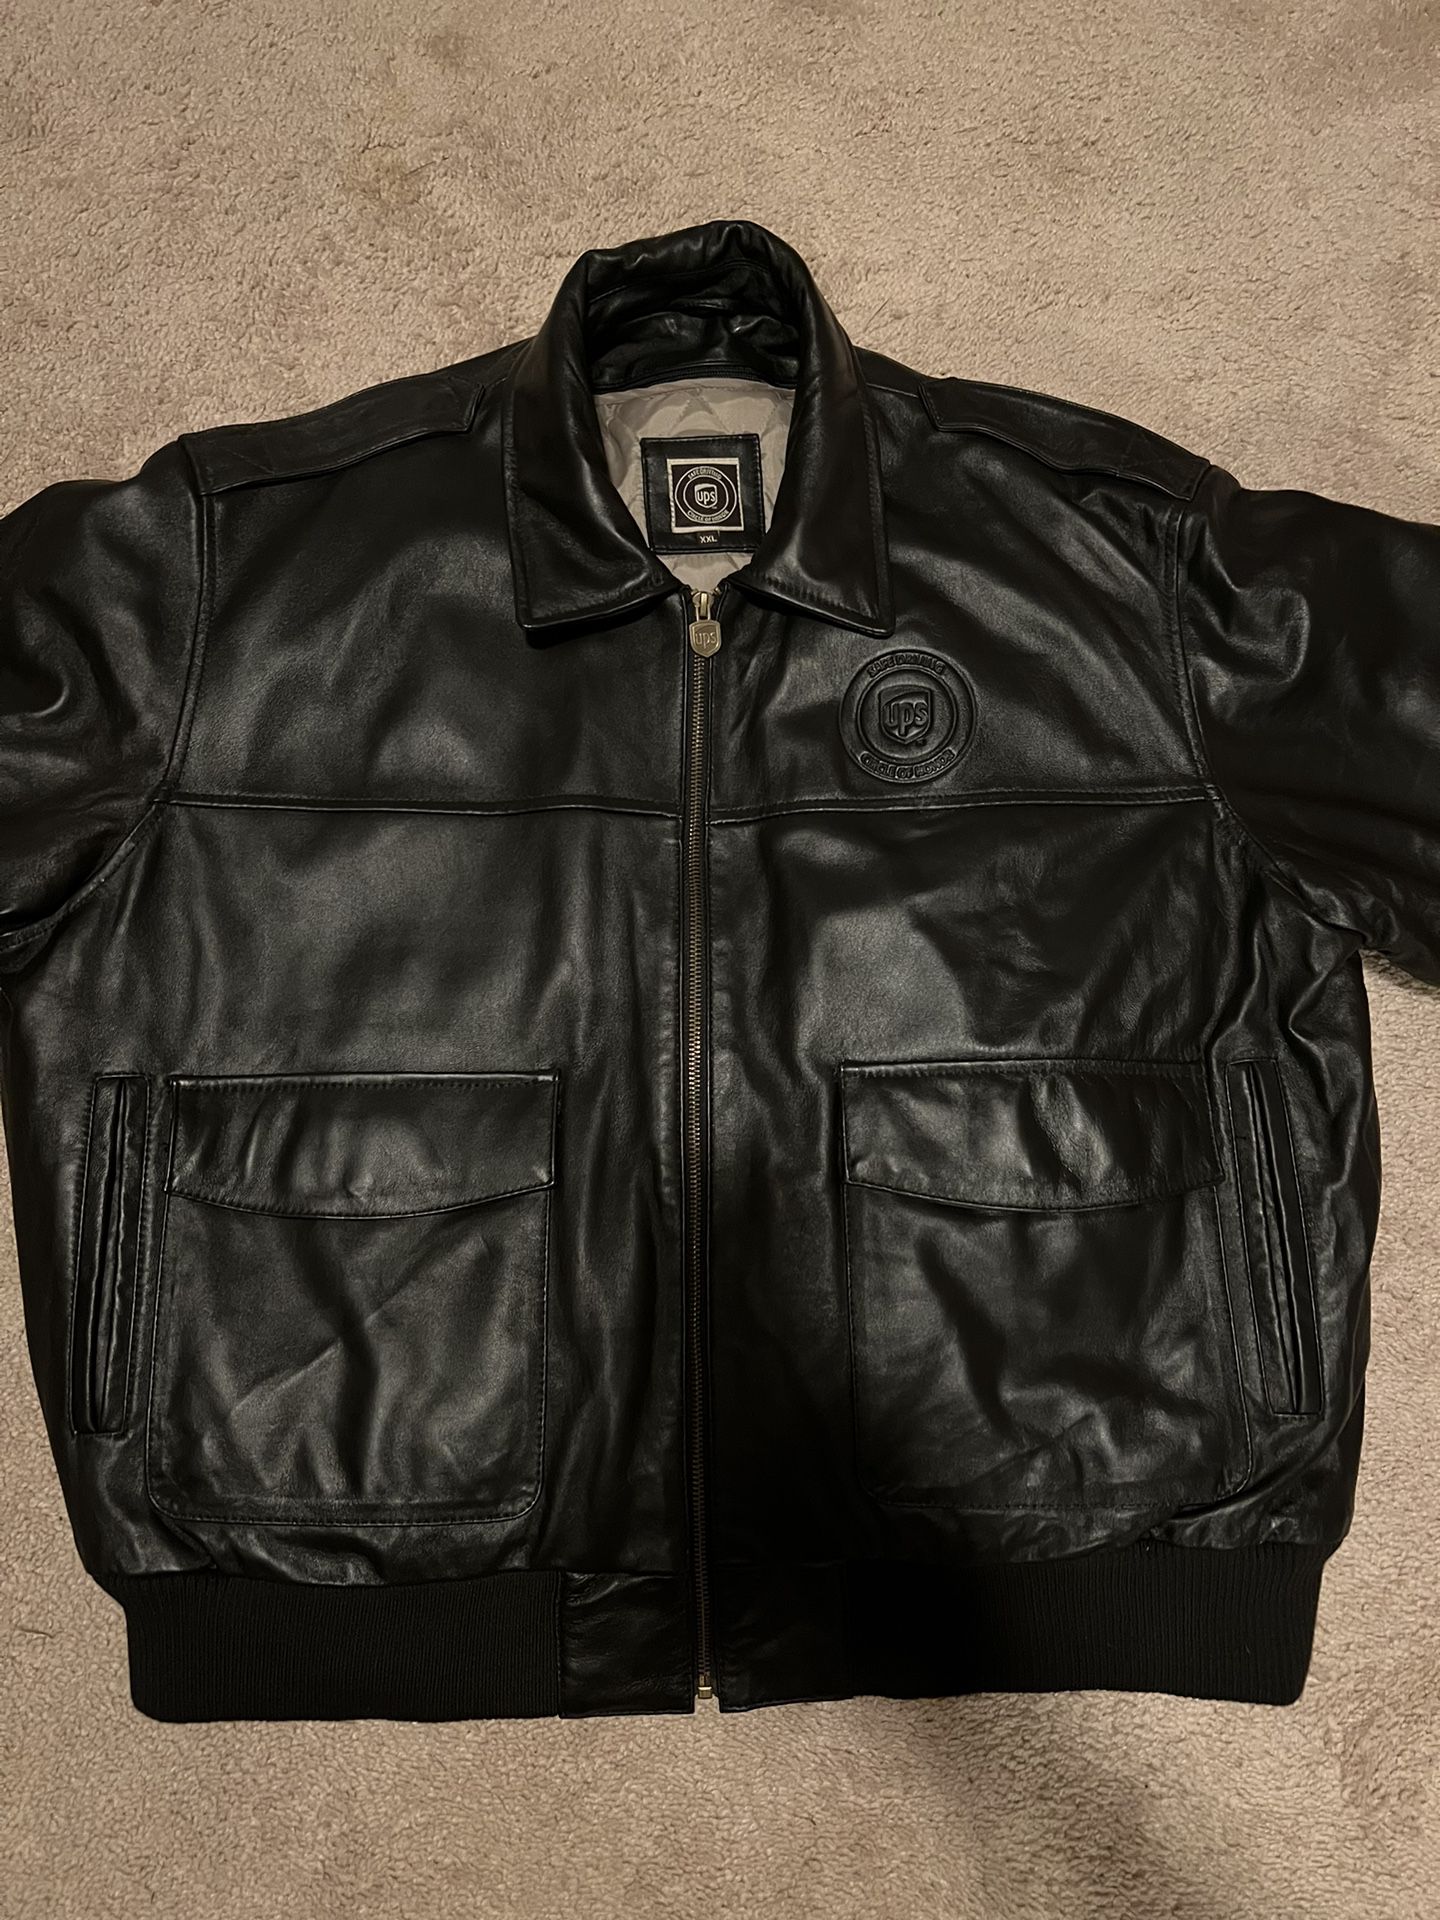 UPS Leather Jacket Size XXL Brand New